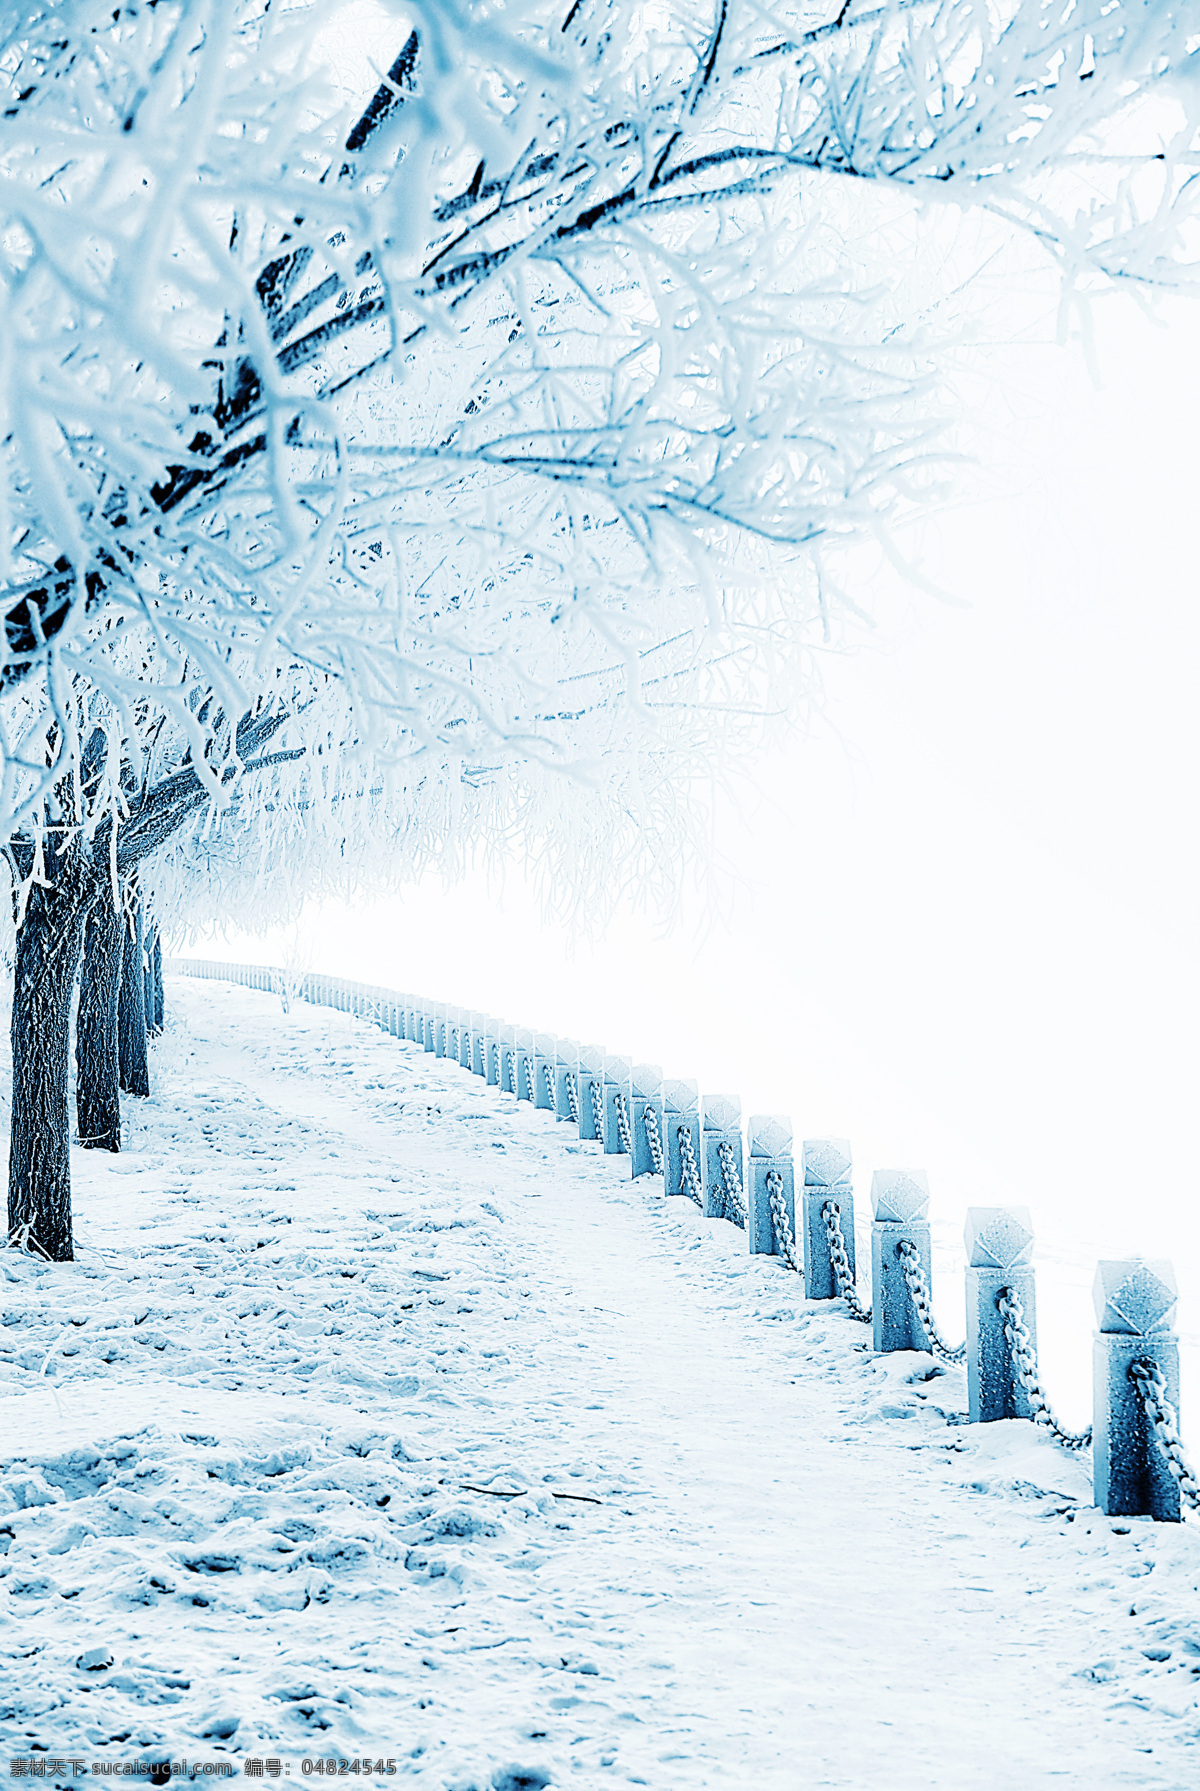 美丽雪地风景 冬天雪景 美丽风景 雪地风景 冬季雪景 景色 冬天的树 自然风景 自然景观 白色